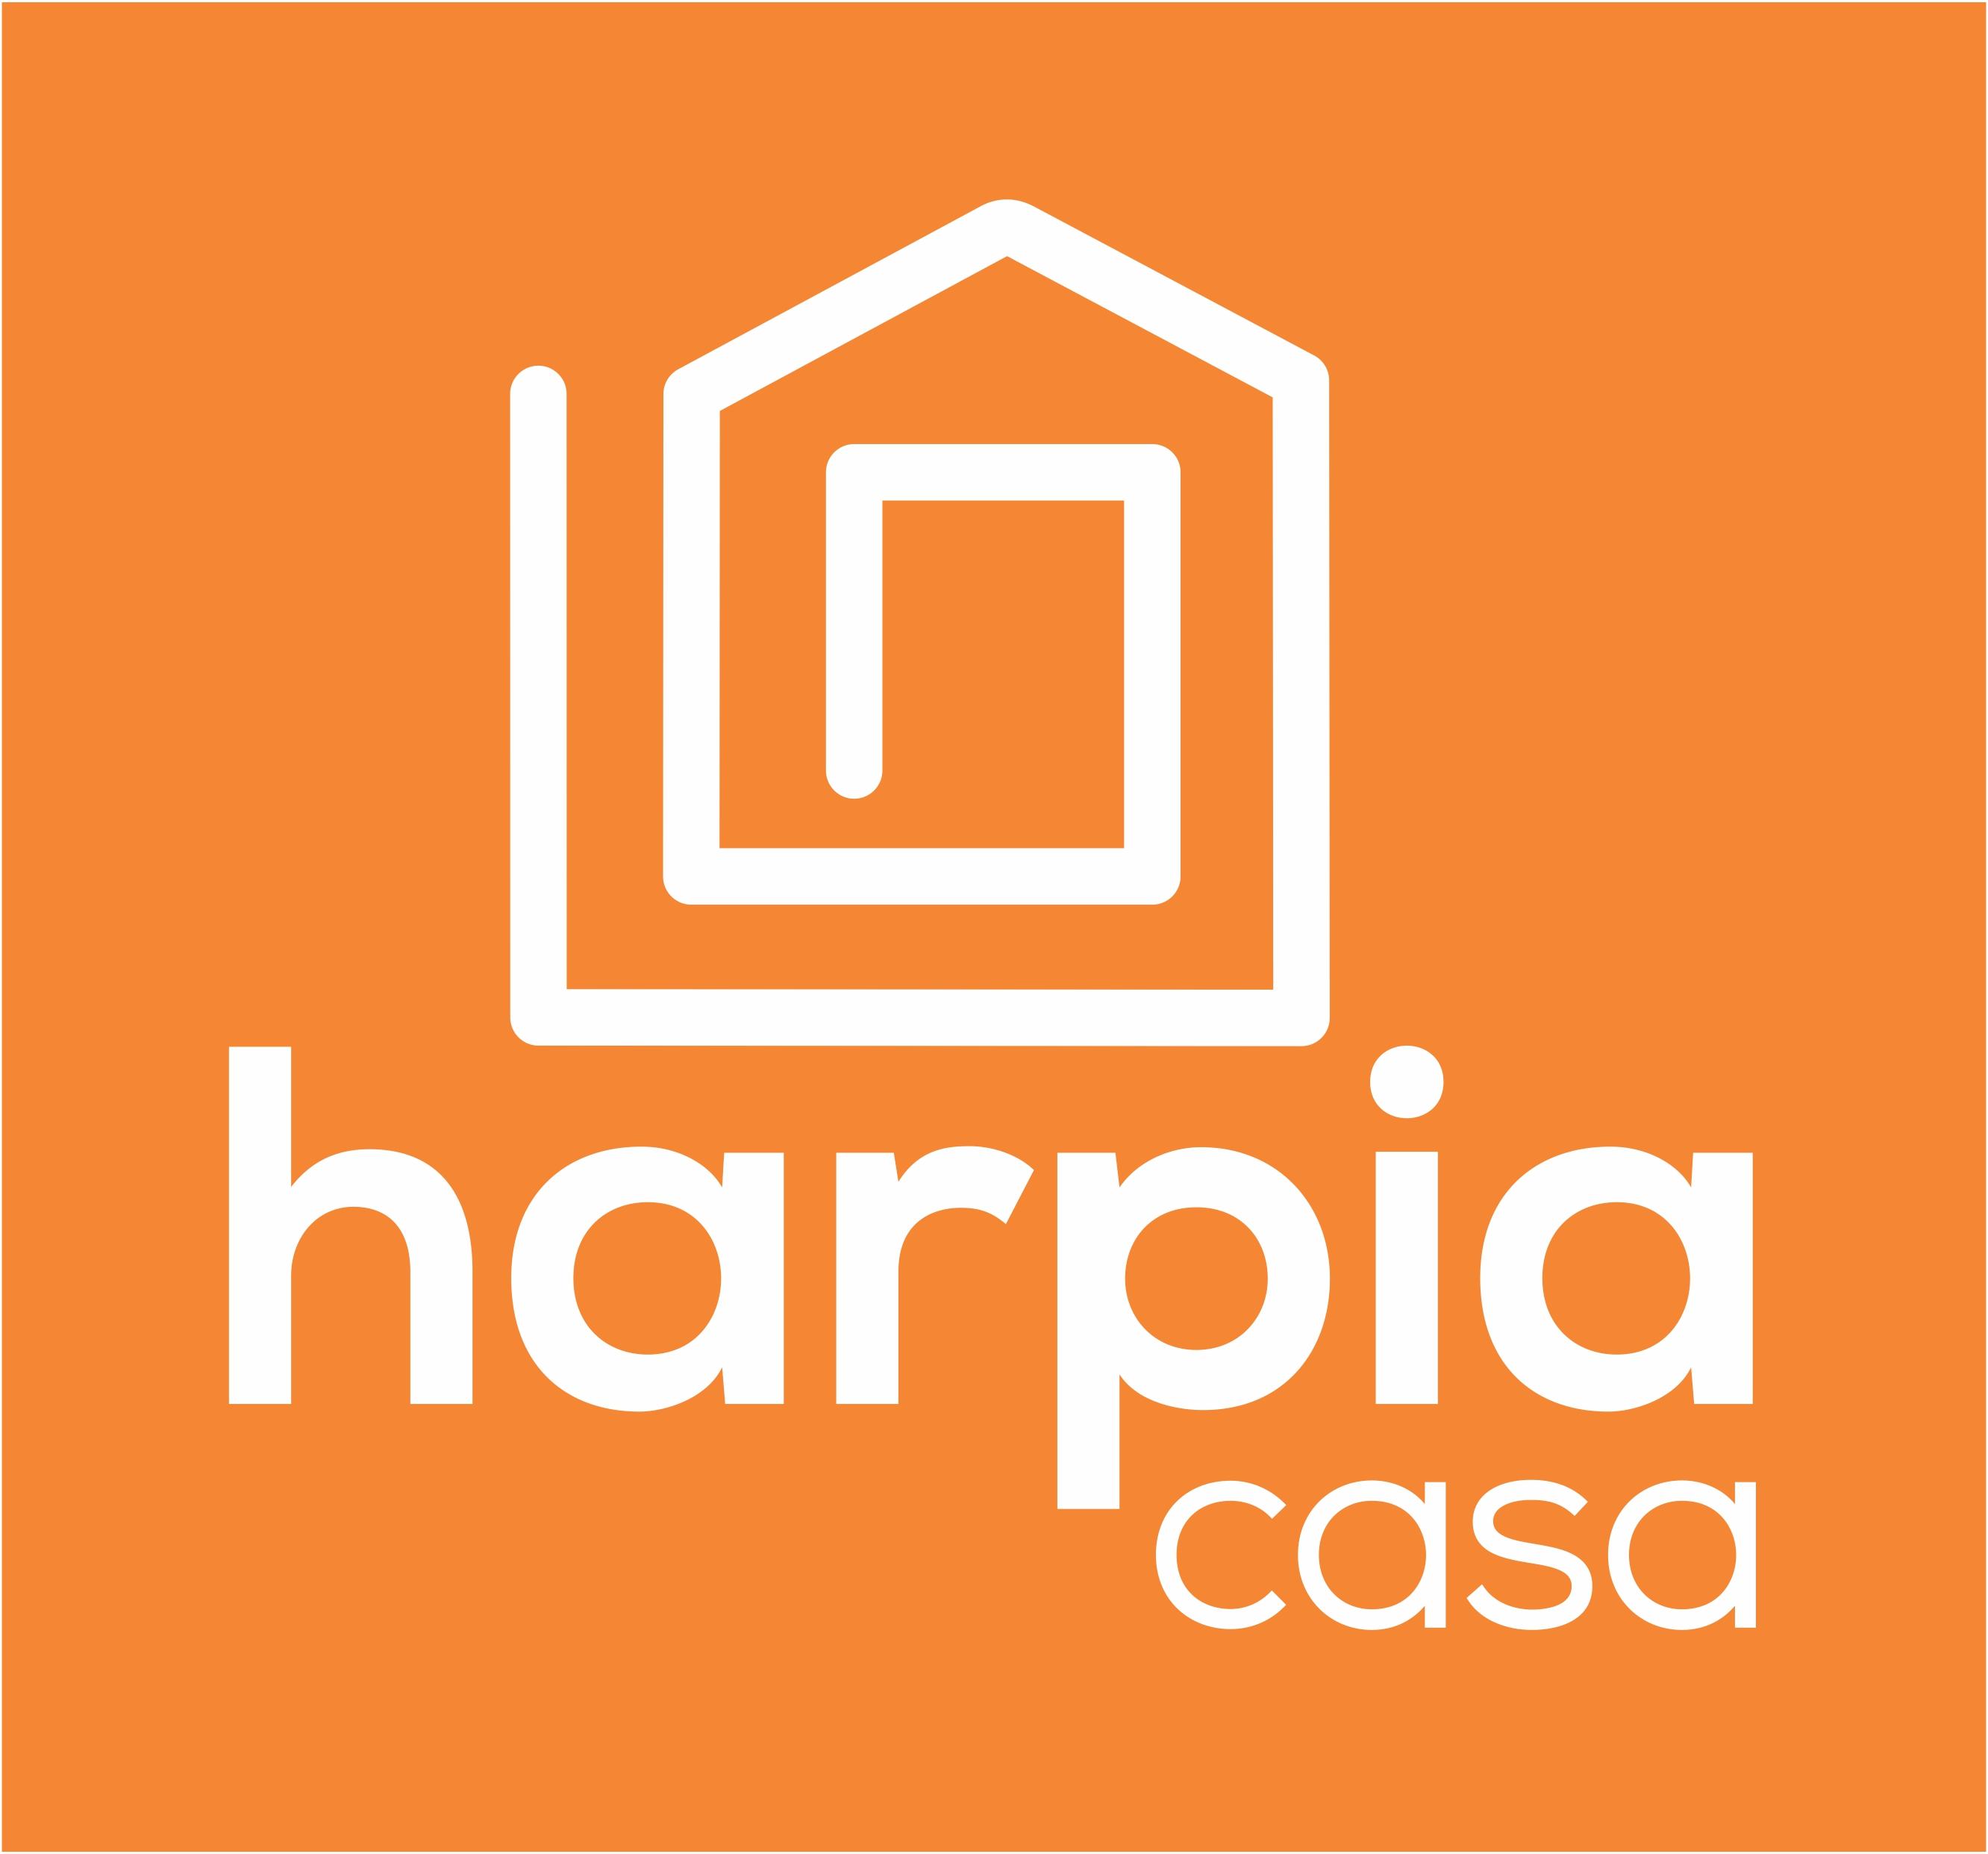 Harpia Casa logo